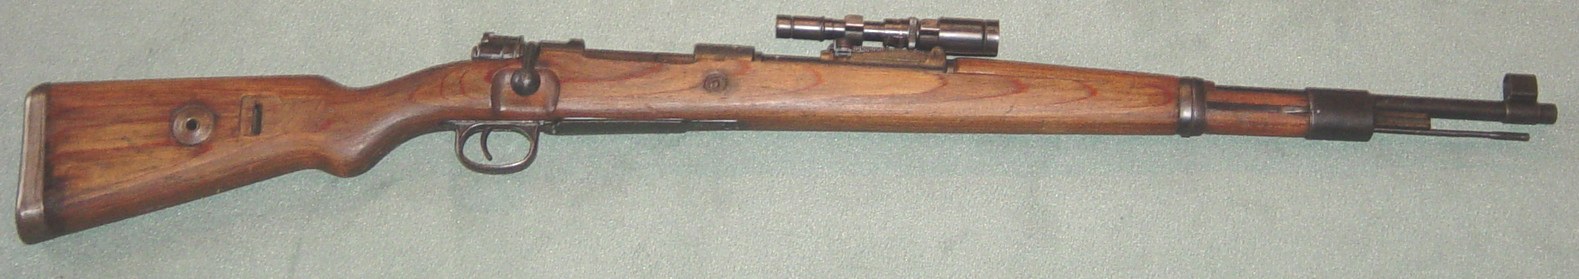 Mauser K 98k quip d'une lunette ZF.41